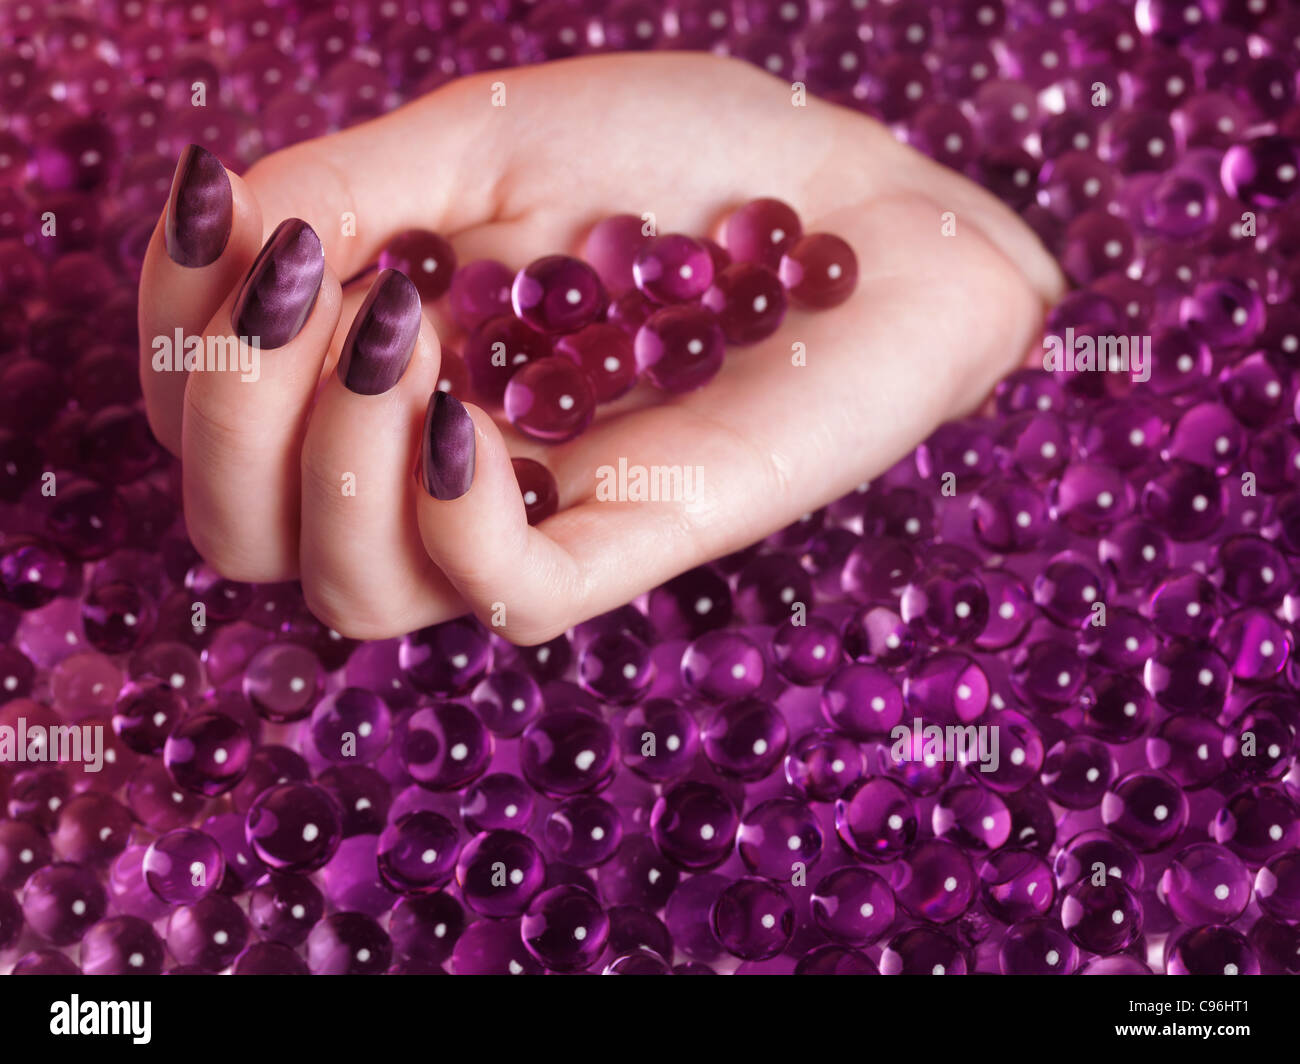 Lizenz erhältlich bei MaximImages.com Frauenhand mit violettem nagellack auf abstraktem rosa Süßwarenhintergrund Stockfoto